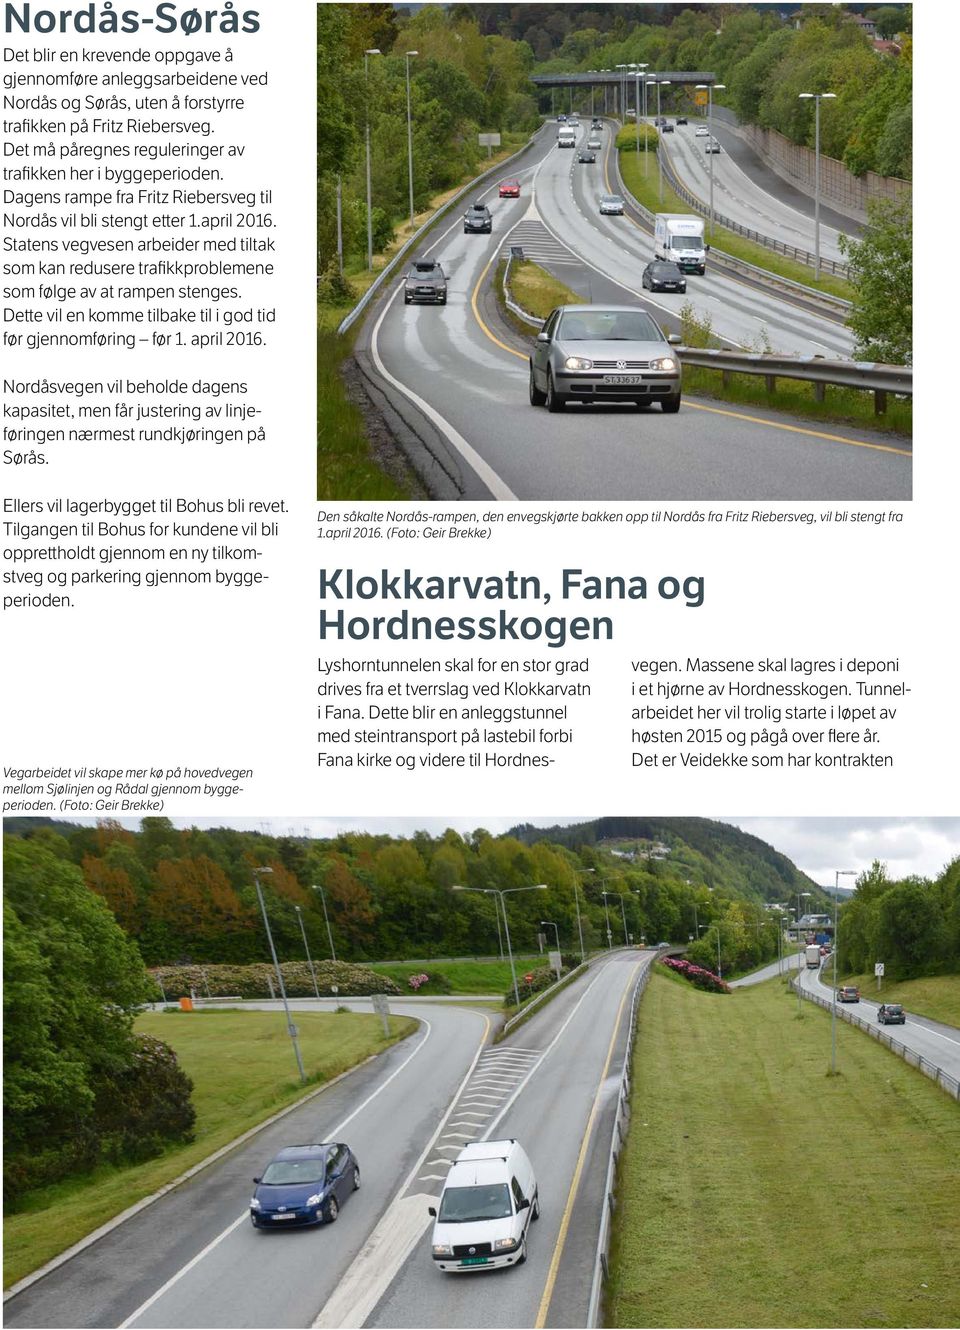 Statens vegvesen arbeider med tiltak som kan redusere trafikkproblemene som følge av at rampen stenges. Dette vil en komme tilbake til i god tid før gjennomføring før 1. april 2016.